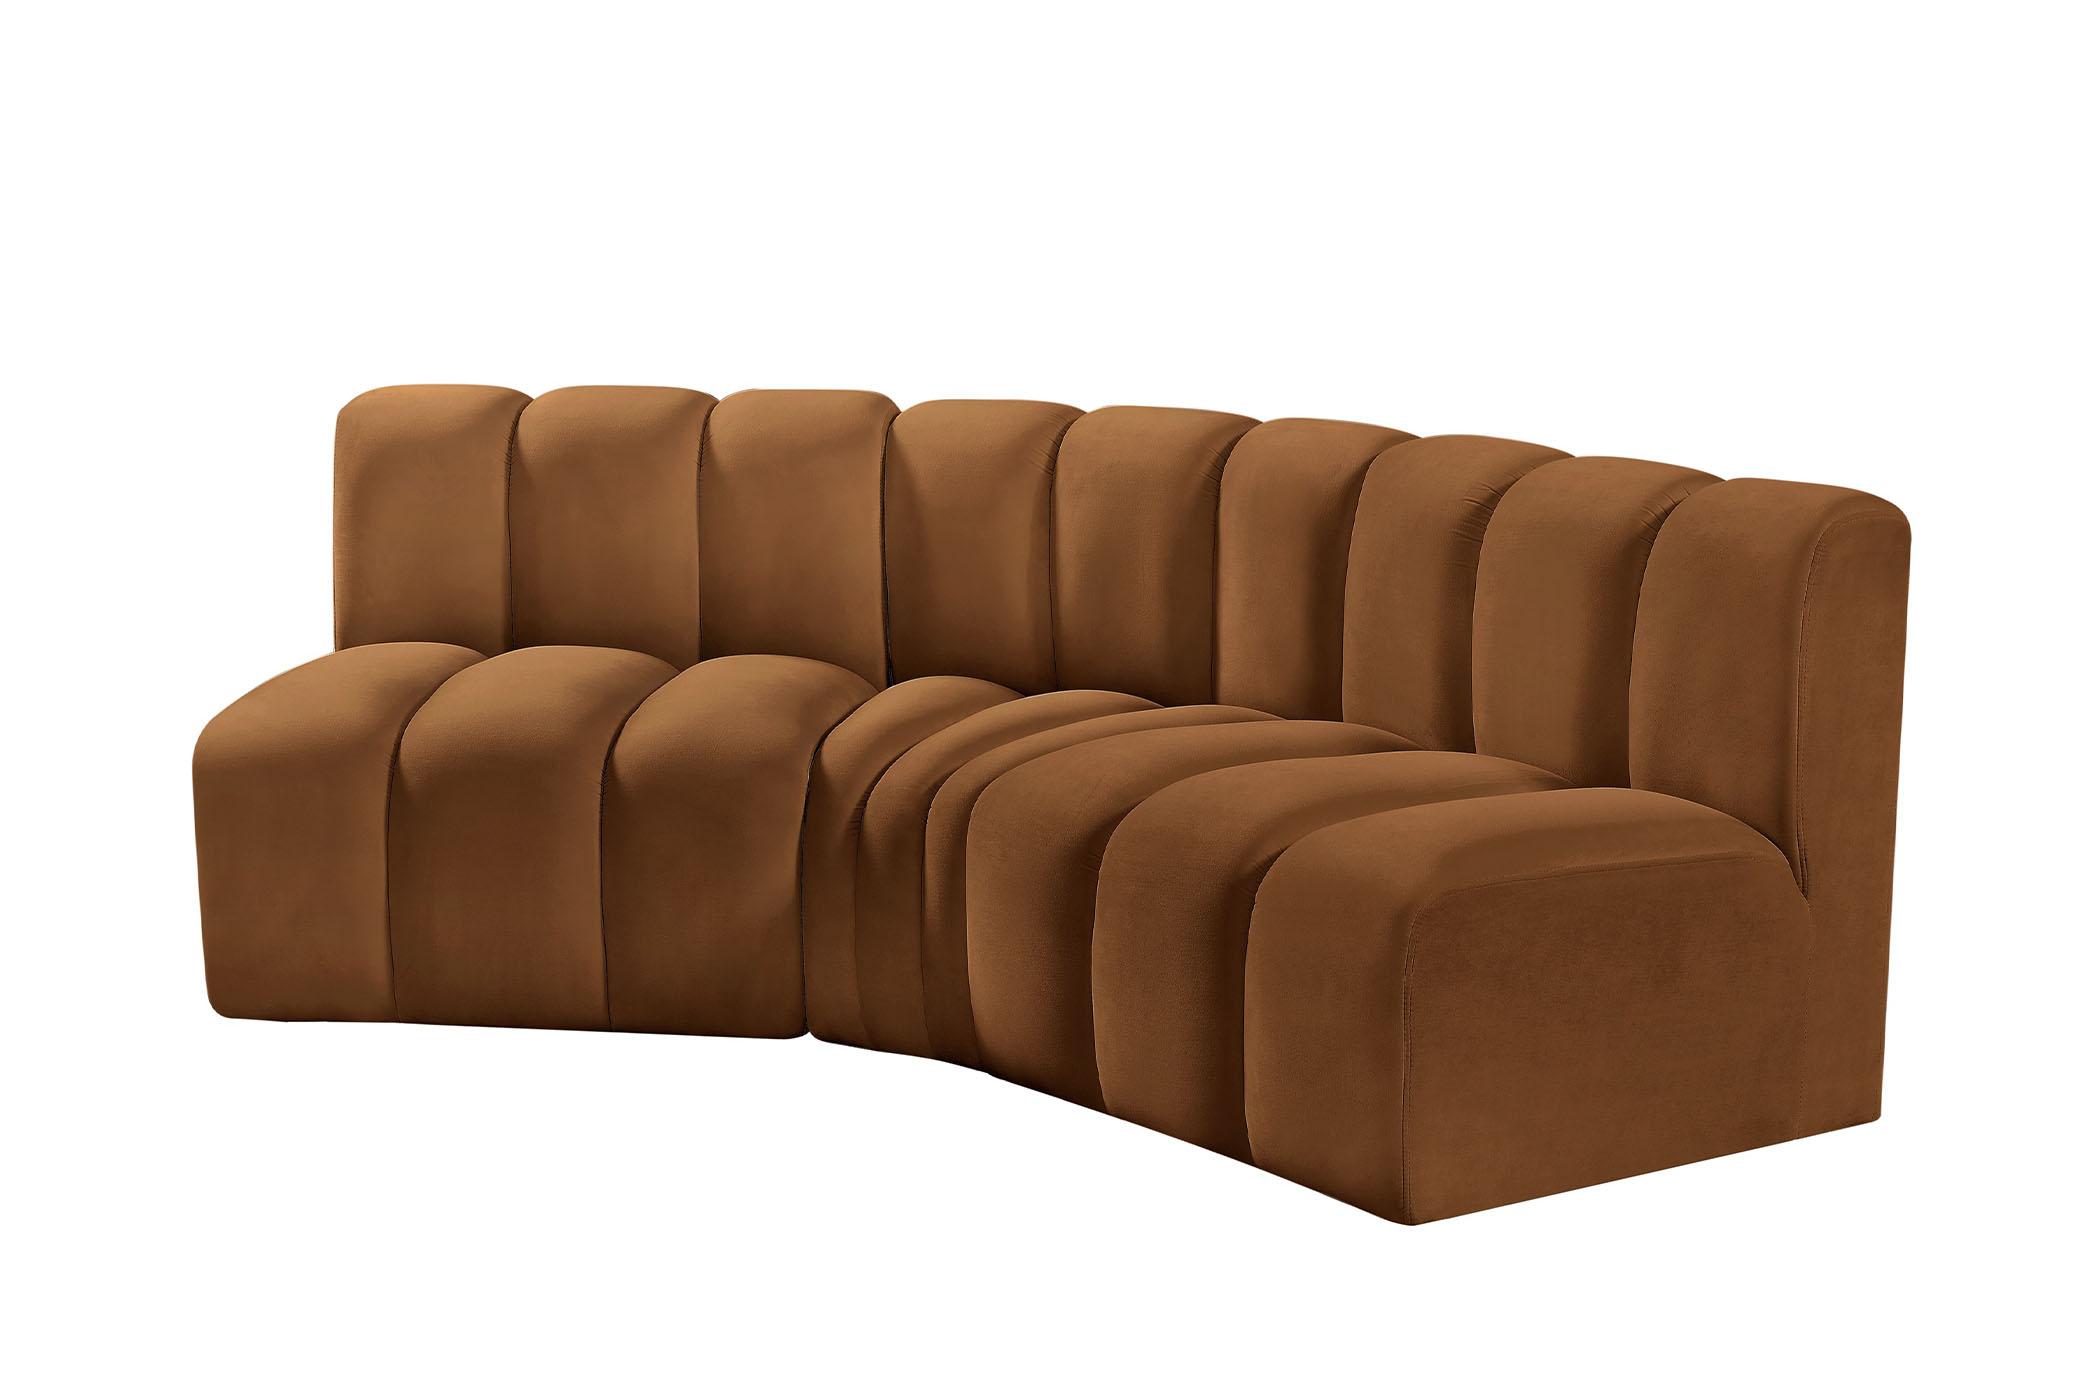 

    
103Saddle-S3B Meridian Furniture Modular Sectional Sofa
